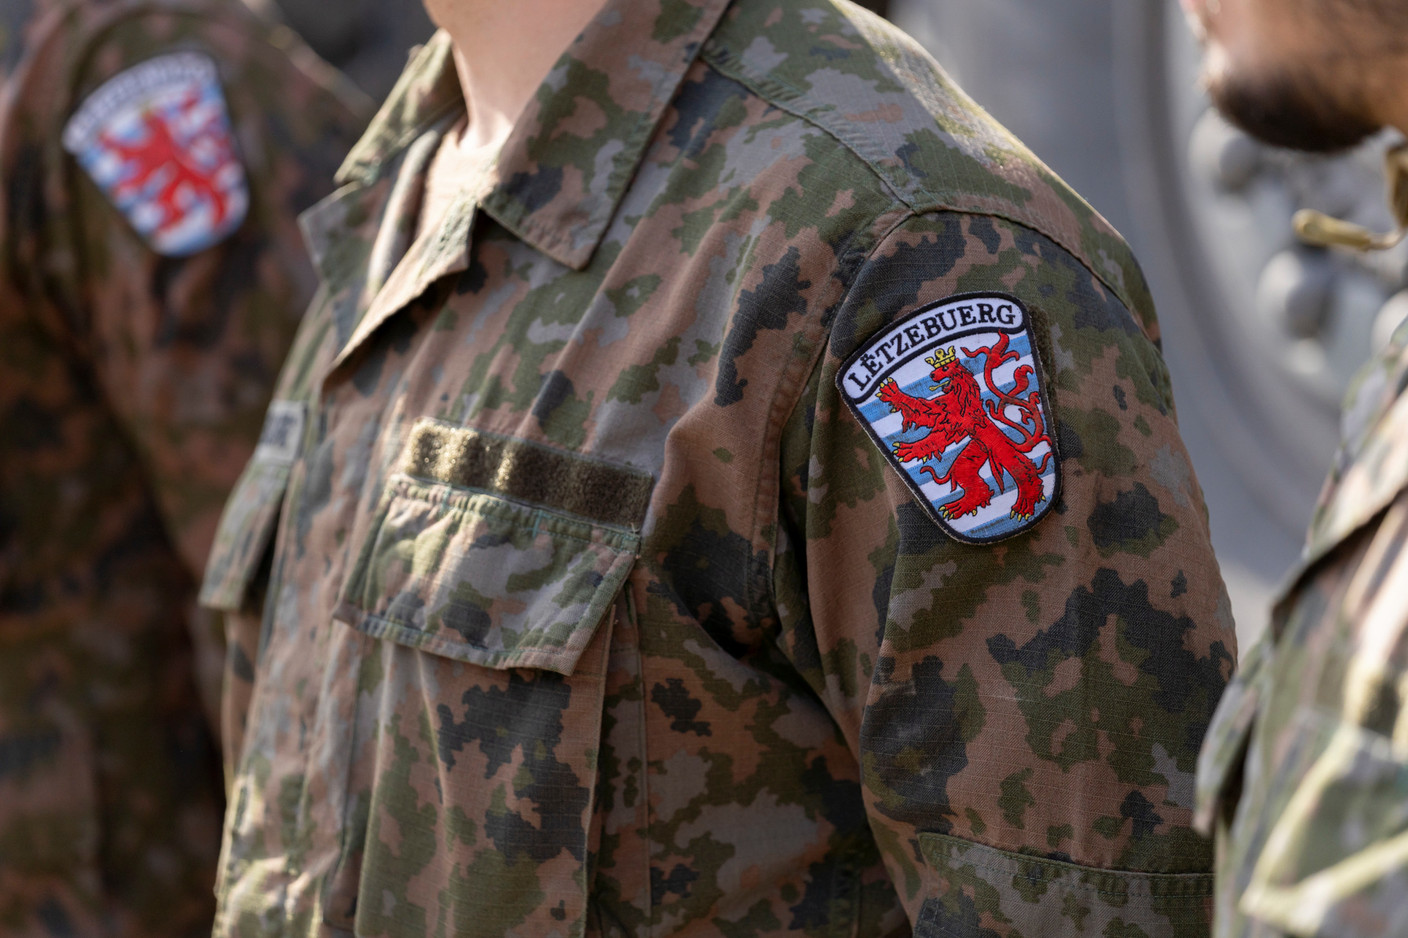 Six membres de l’armée luxembourgeoise sont sur place, dans le cadre de l’EFP. Leurs visages ne peuvent être montrés et leurs noms de famille révélés, pour des raisons de sécurité. (Photo: Emmanuel Claude/SIP)